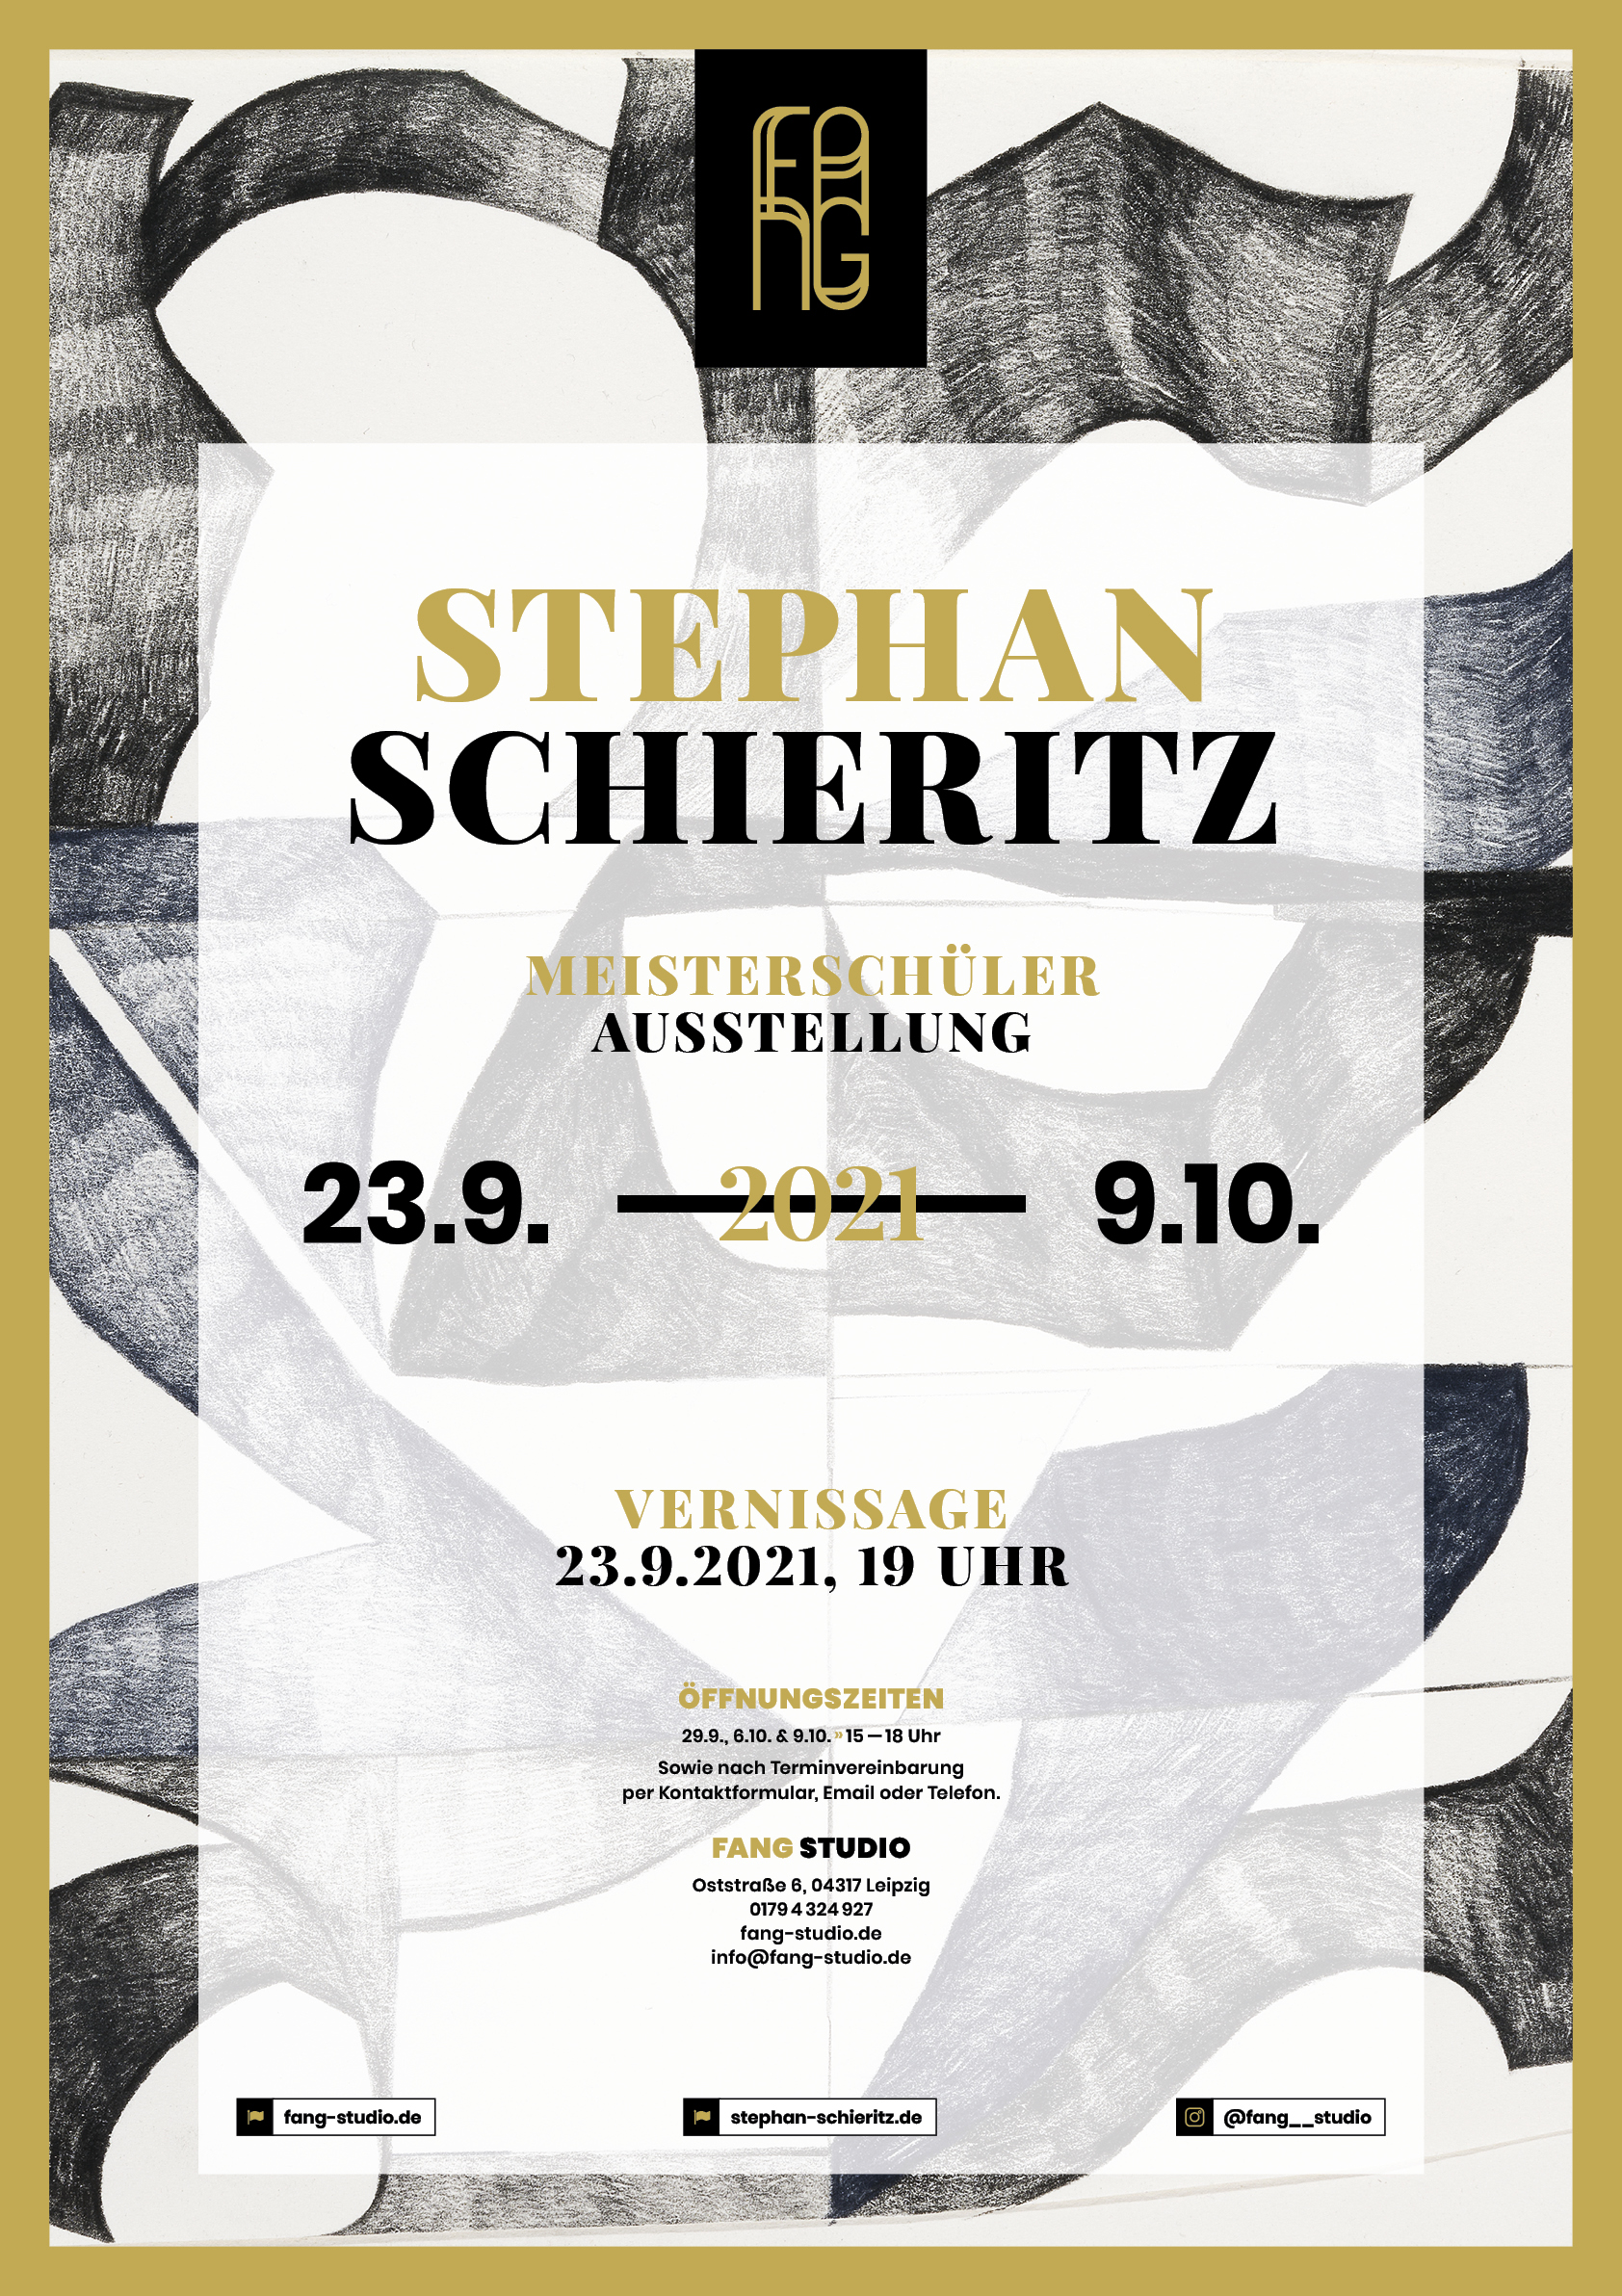 Stephan Schieritz